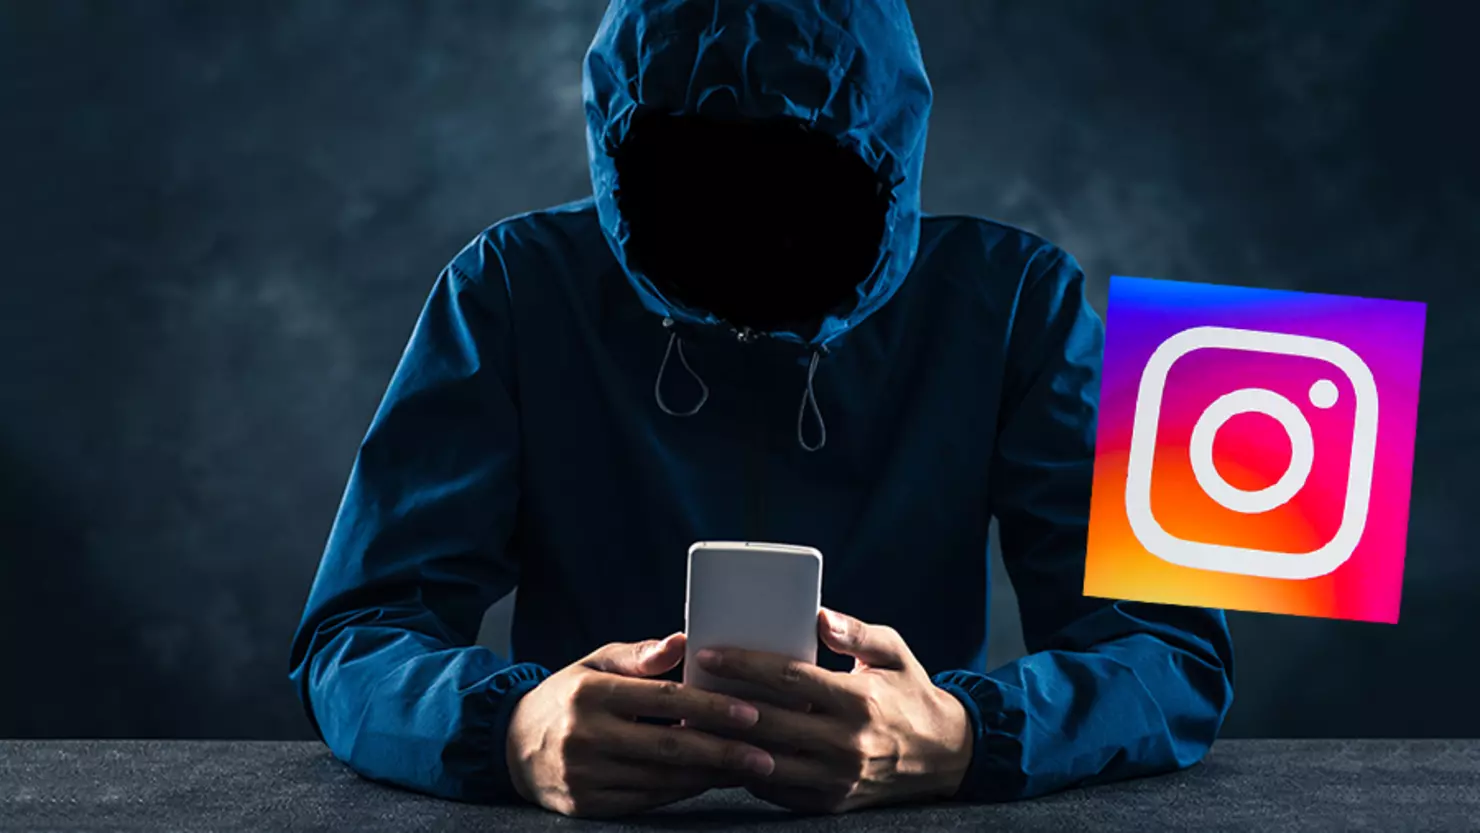 “Suspeita de Stalker no Instagram? Descubra dicas para identificar e enfrentar essa situação preocupante